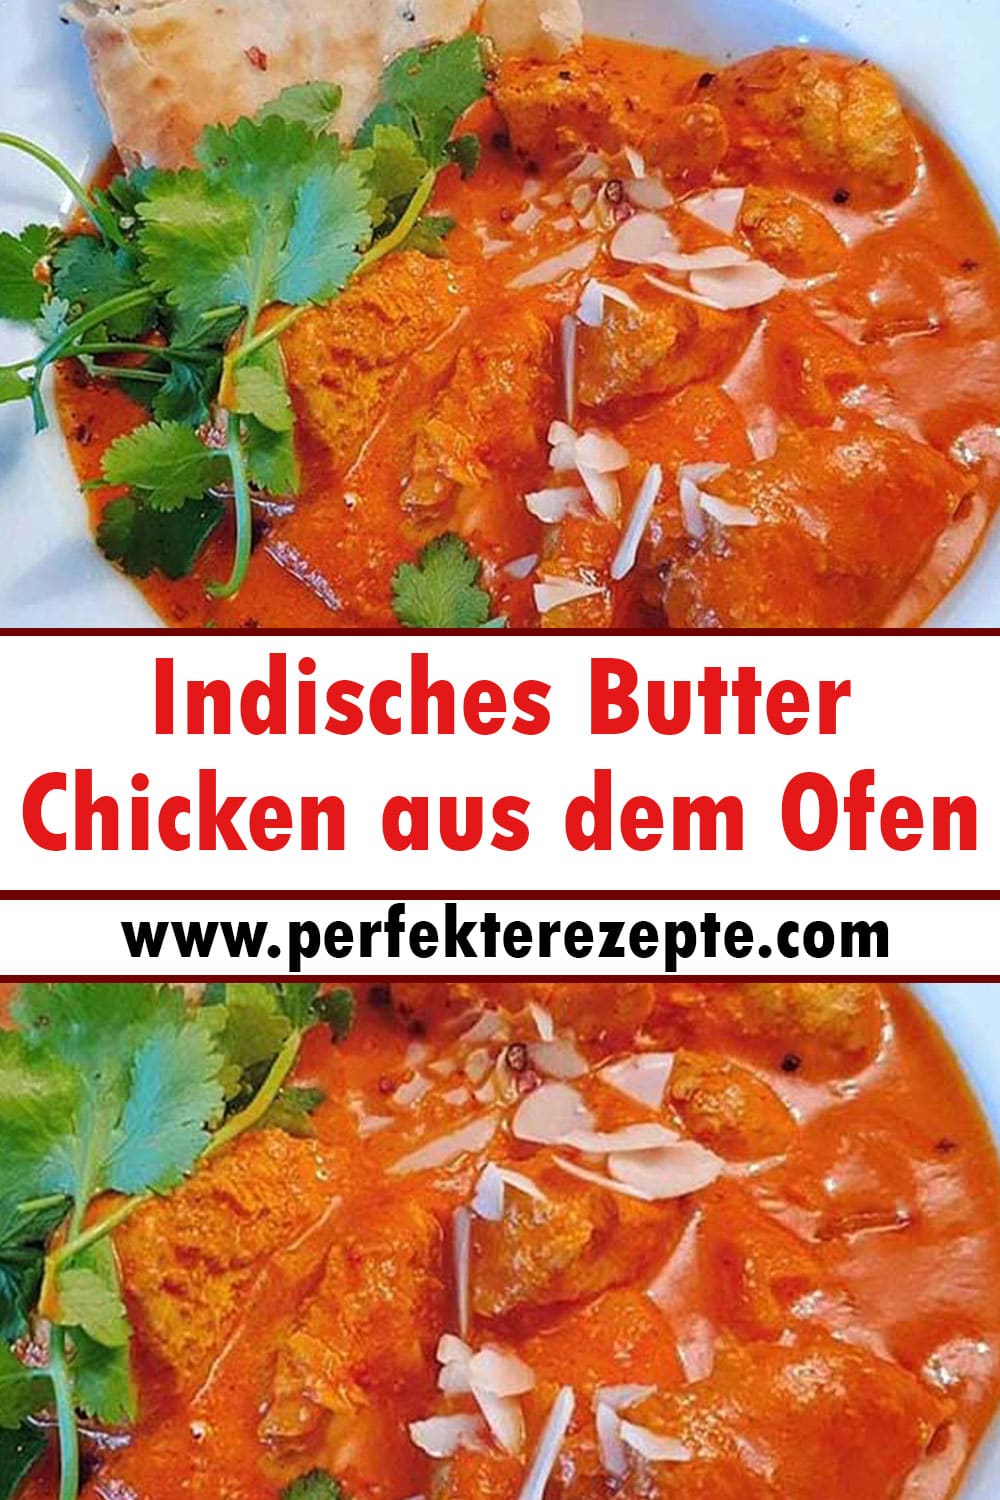 Indisches Butter Chicken aus dem Ofen Rezept